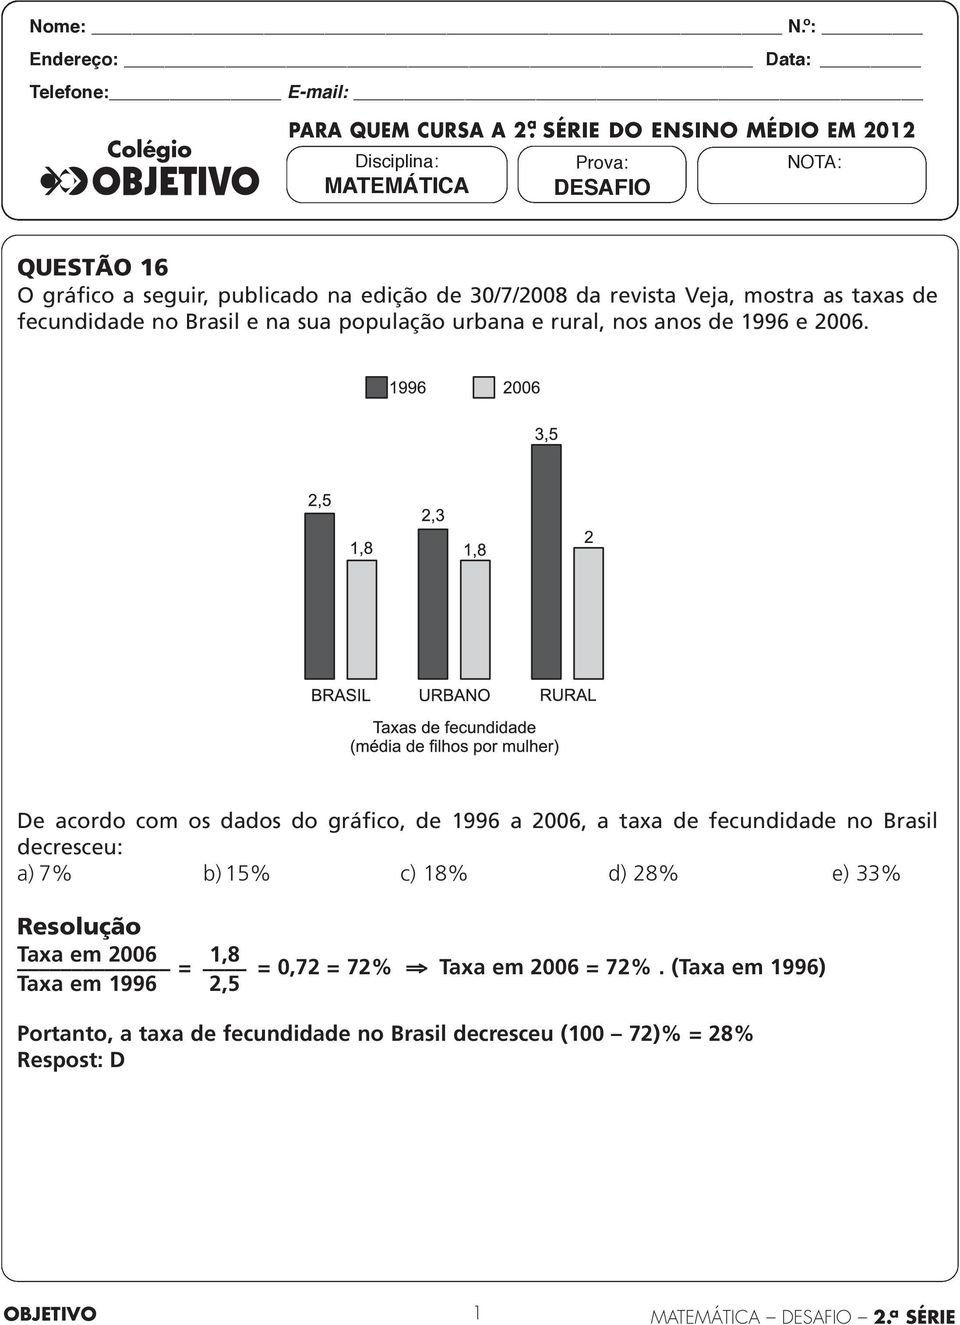 gráfico a seguir, publicado na edição de 30/7/2008 da revista Veja, mostra as taxas de fecundidade no Brasil e na sua população urbana e rural, nos anos de